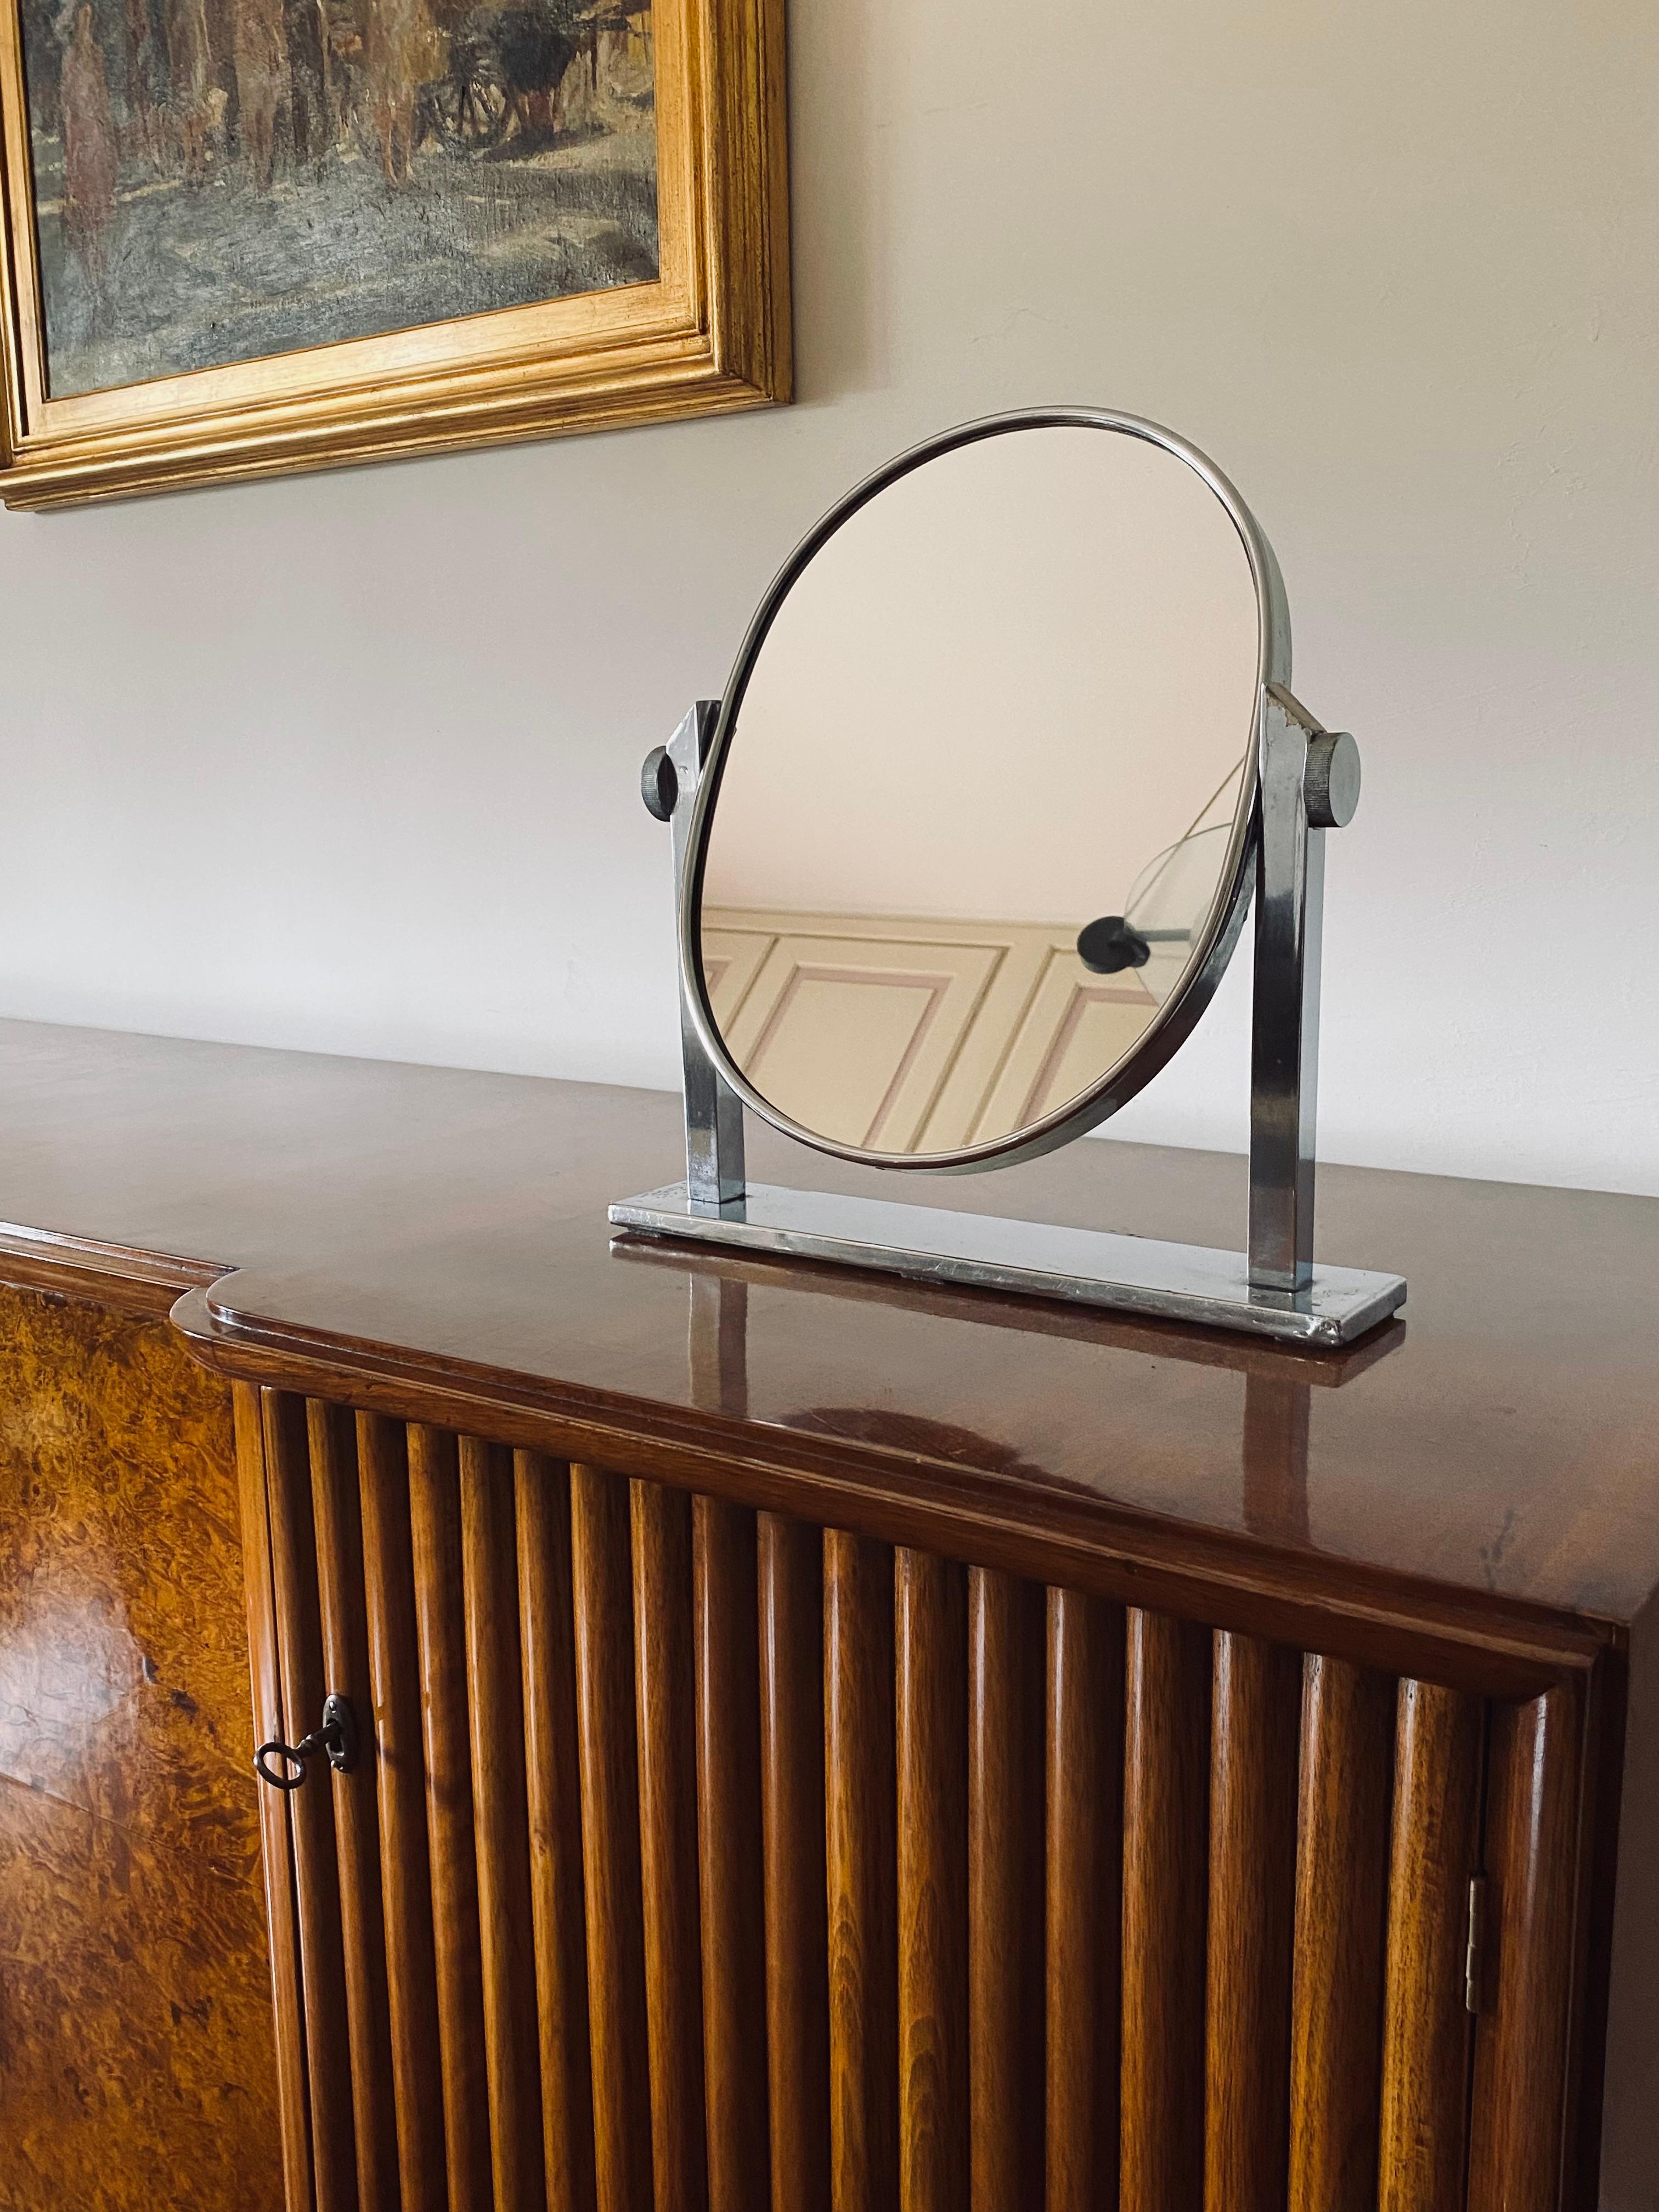 Mid-Century vernickelt Messing Tisch Spiegel / Eitelkeit

Italien 1960er Jahre

vernickeltes Messing, Spiegel

H 38 cm x 36 x 7,5 cm

Condit: sehr gut im Einklang mit Alter und Gebrauch.